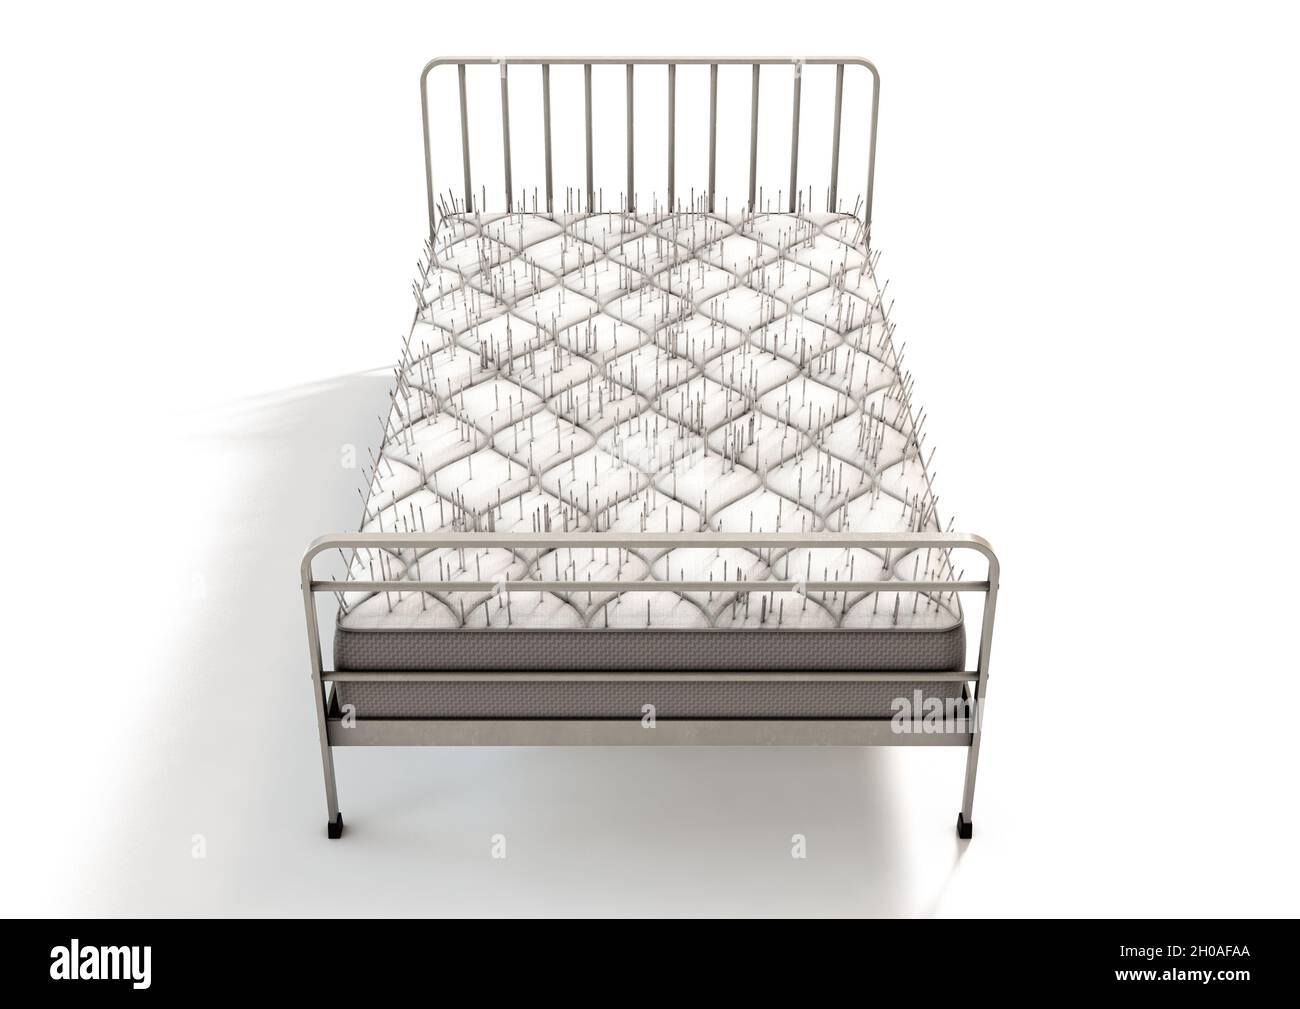 Eine wörtliche Metapher, die ein metallgerahmtes Bett mit einer mit Nägeln  bedeckten Matratze auf einem isolierten weißen Studiohintergrund zeigt -  3D-Rendering Stockfotografie - Alamy